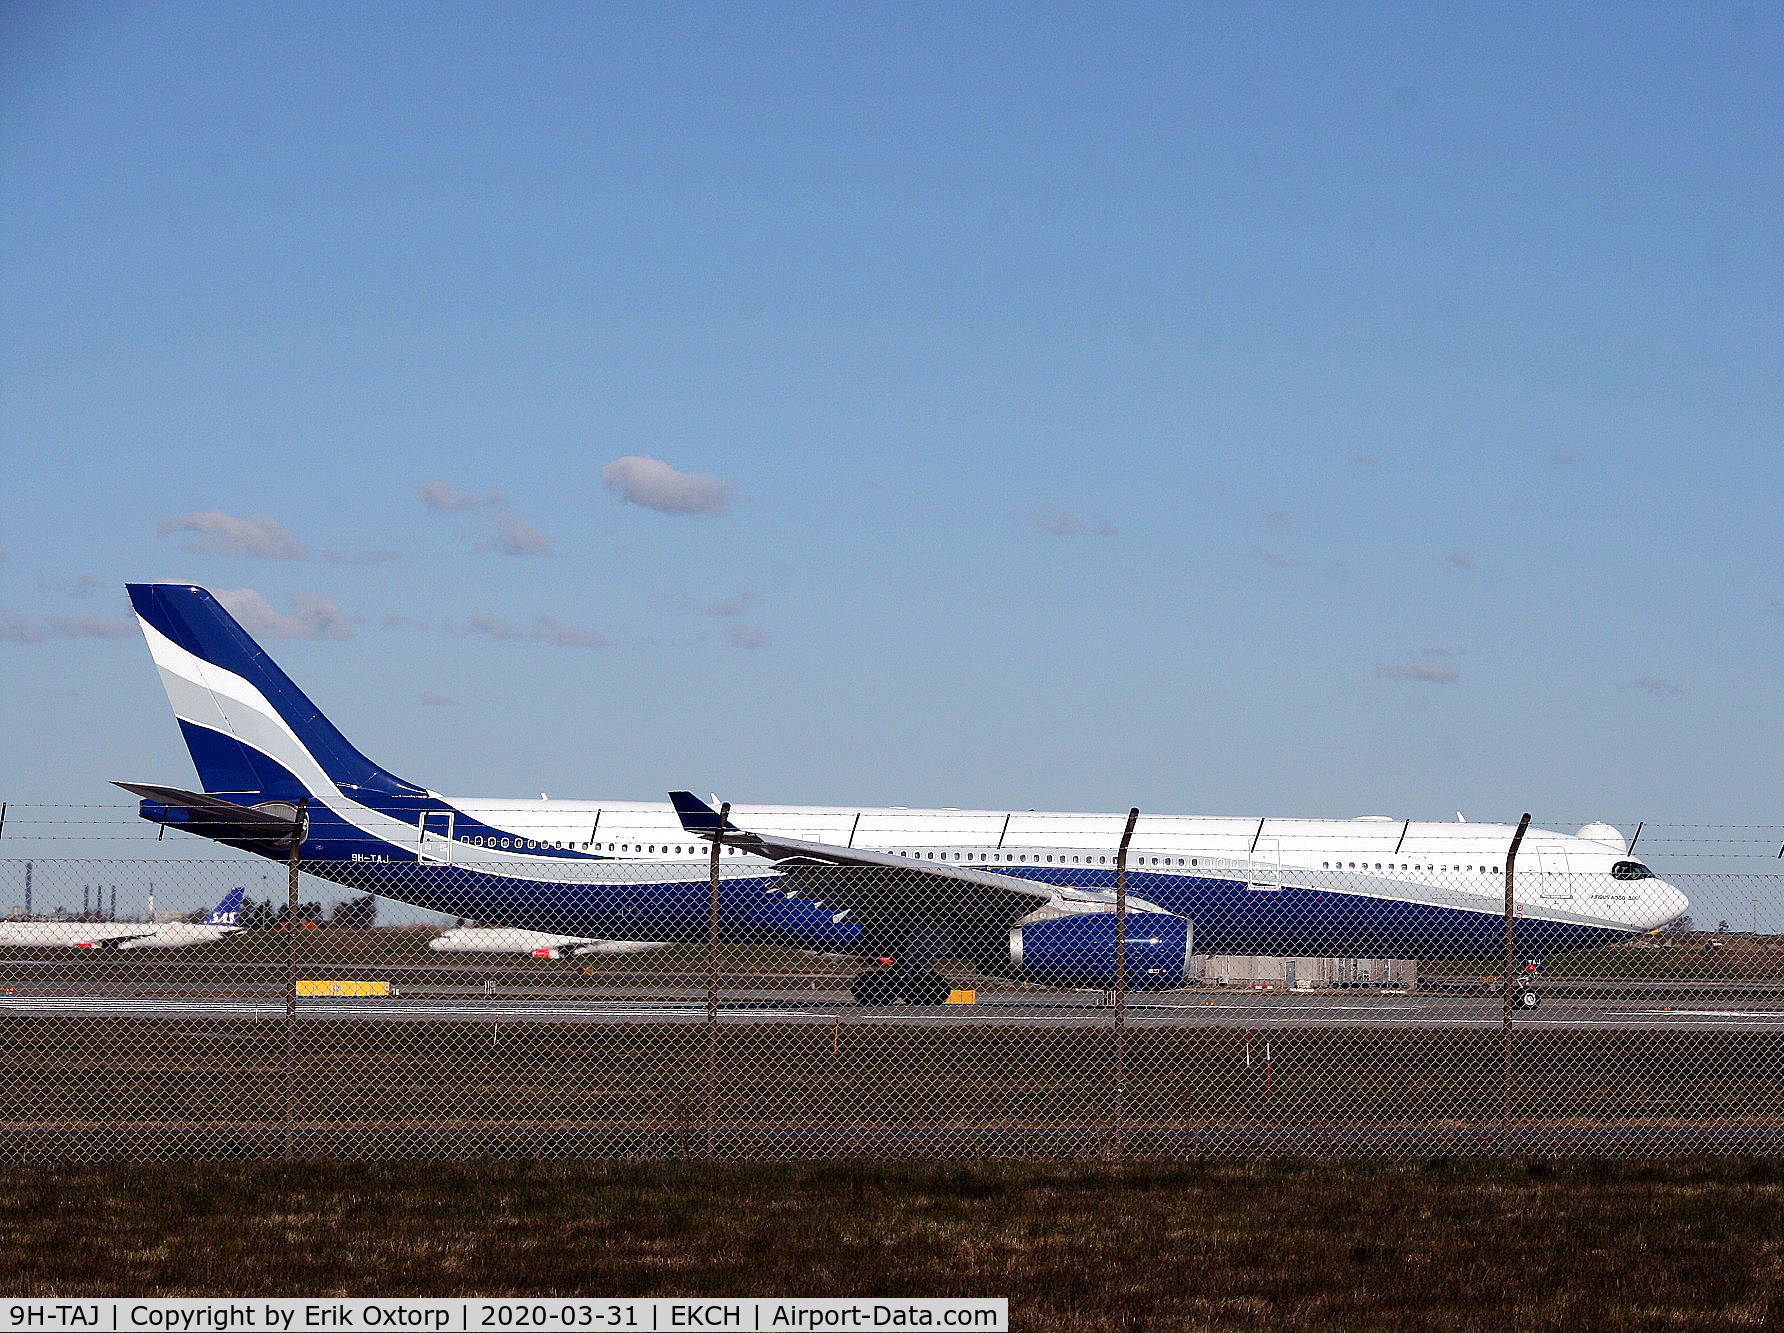 9H-TAJ, 2013 Airbus A330-343X C/N 1453, 9H-TAJ take off rw 04R on a GL-flight to SFJ